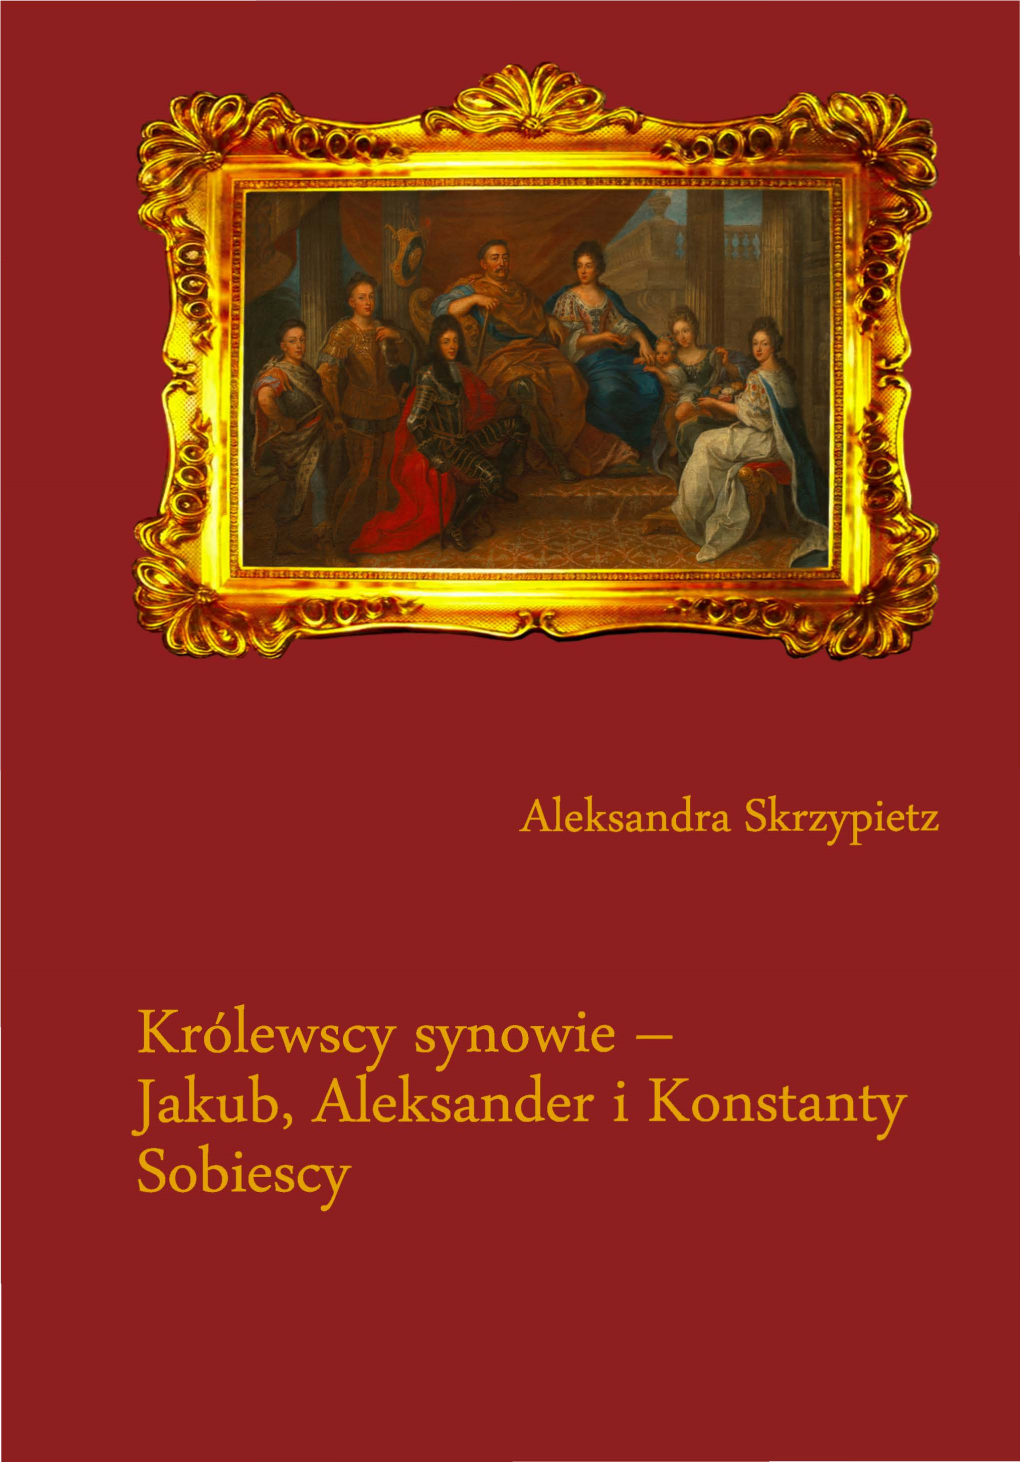 Jakub, Aleksander I Konstanty Sobiescy